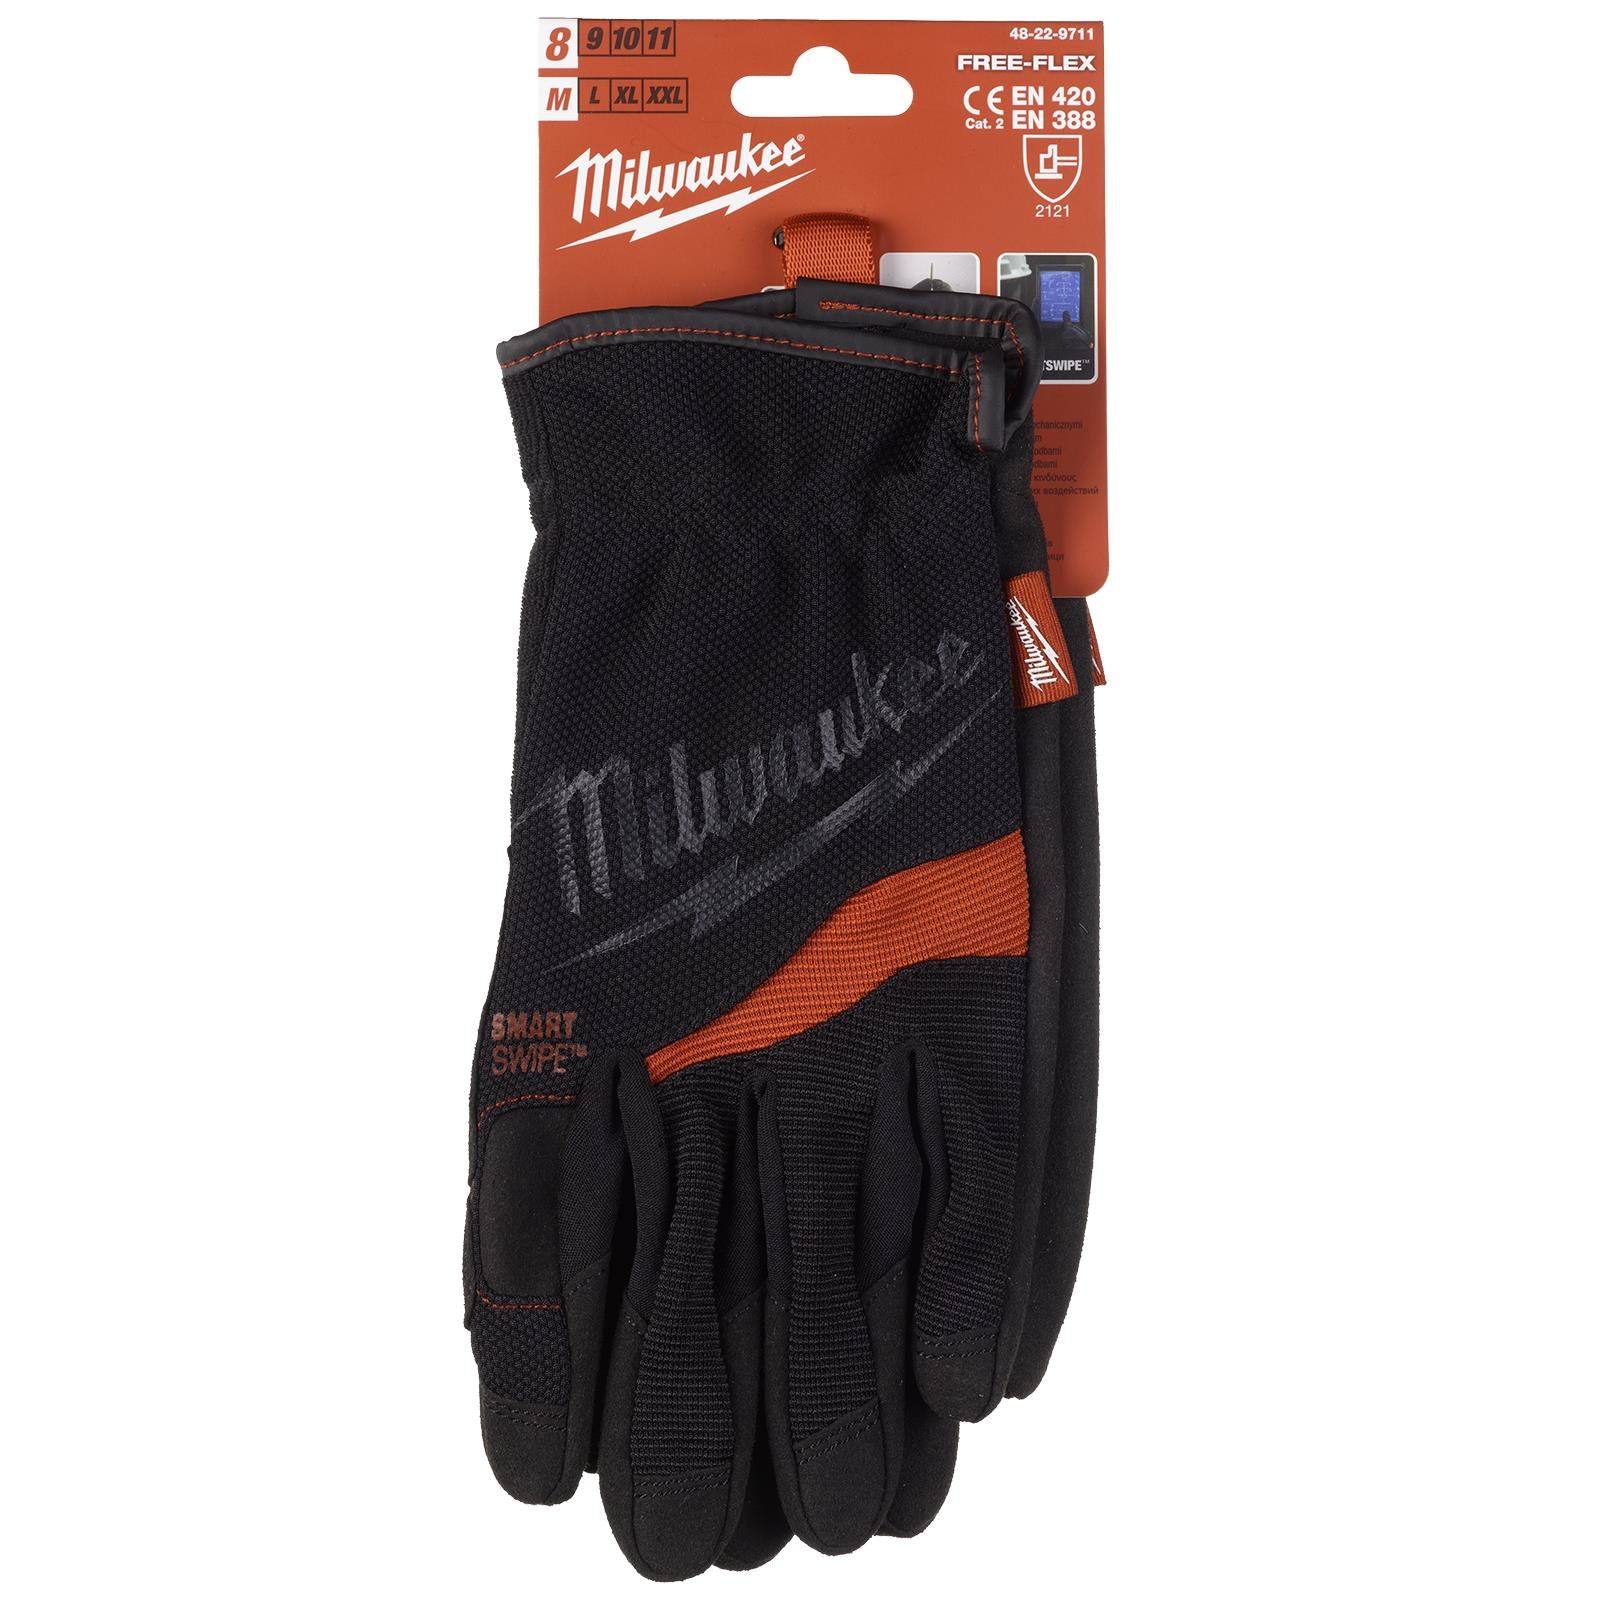 Milwaukee Safety Gloves Free Flex Work Glove Size 10 / XL Extra Large